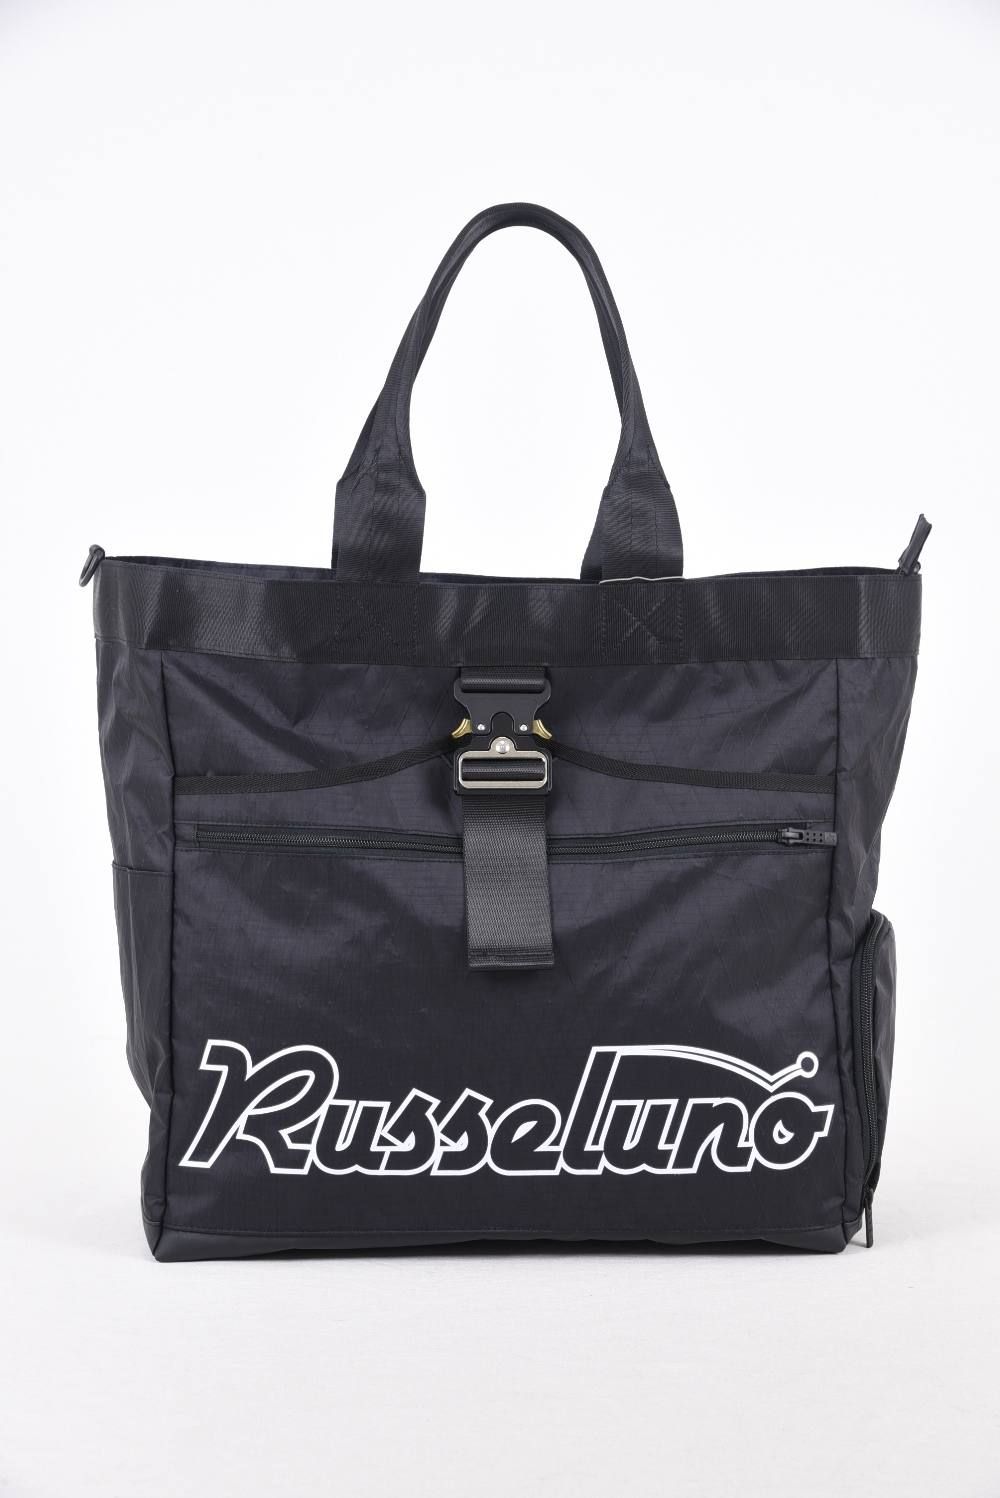 RUSSELUNO 鞄(非売品)